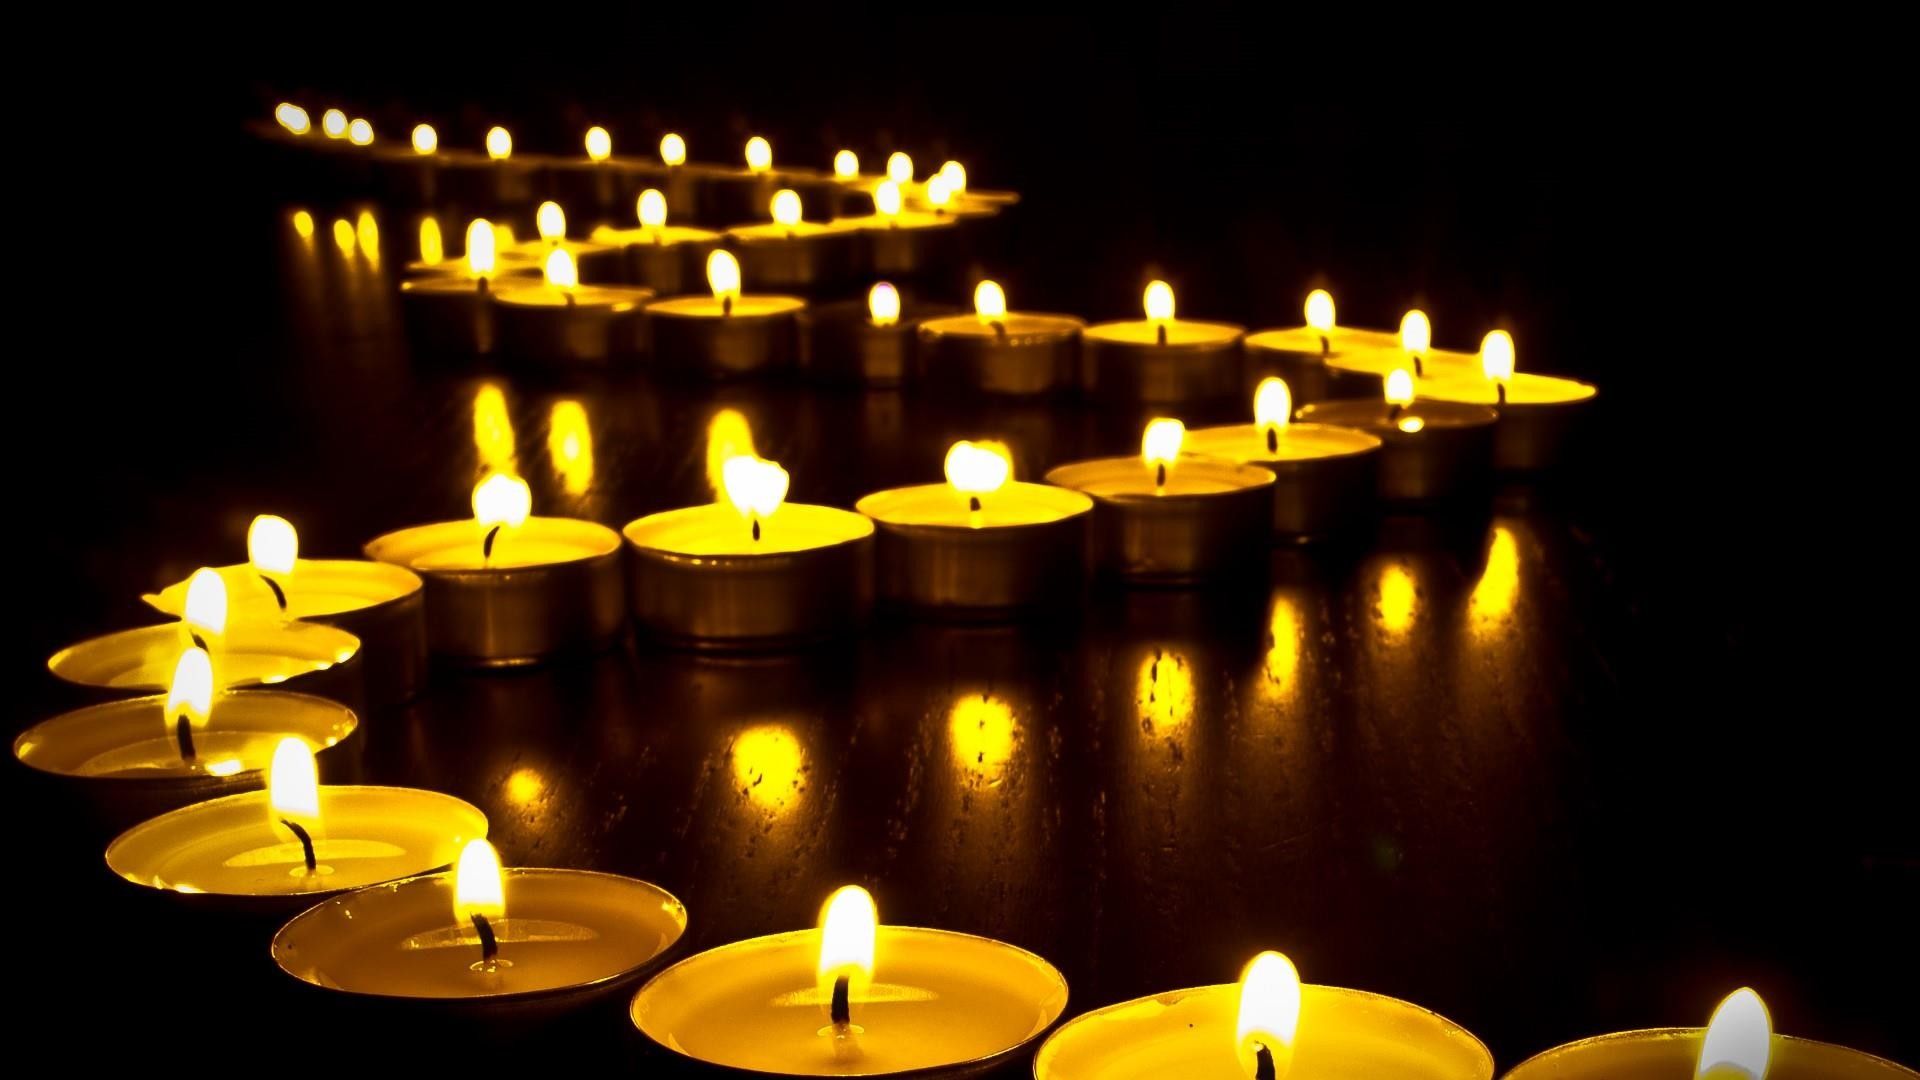 عکس پروفایل زیبا و دیدنی شمع های چیده شده روشن تسلیت بدون متن 